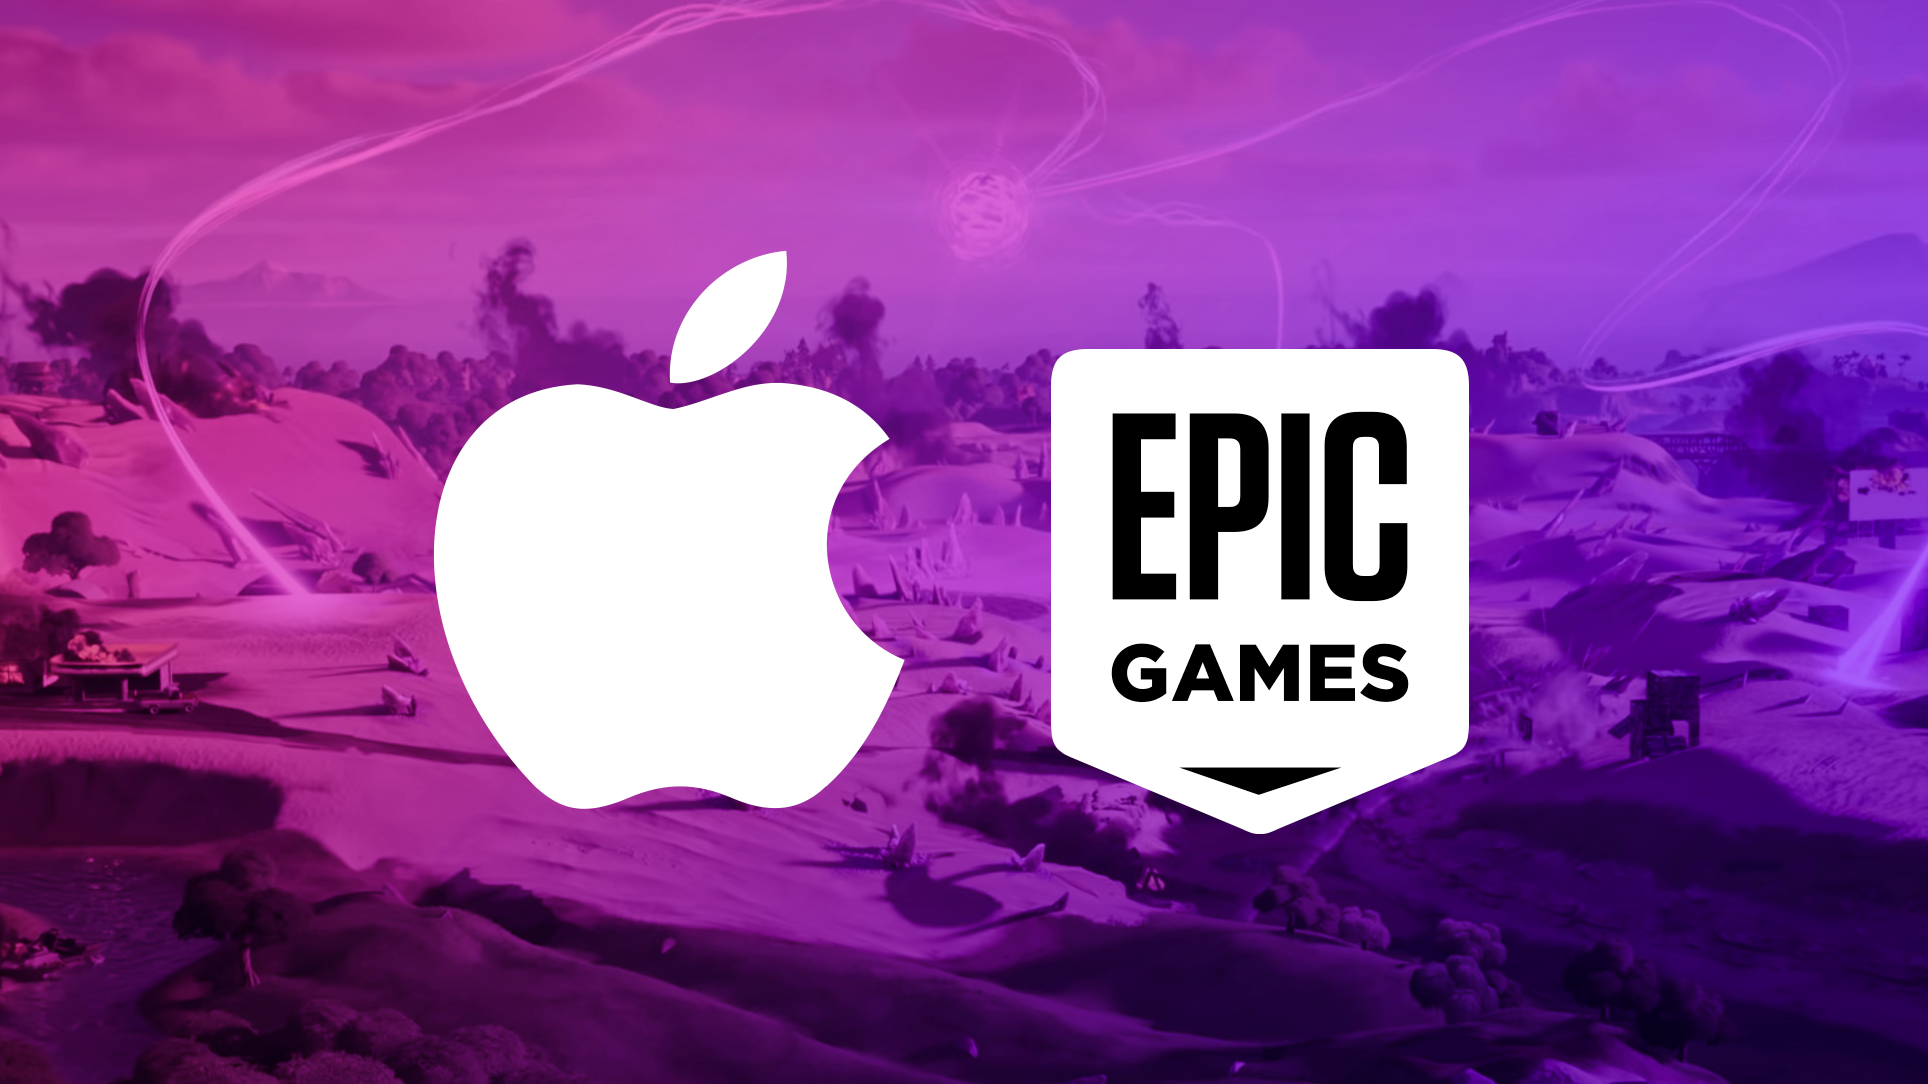 Завершилось судебное разбирательство между Apple и Epic Games